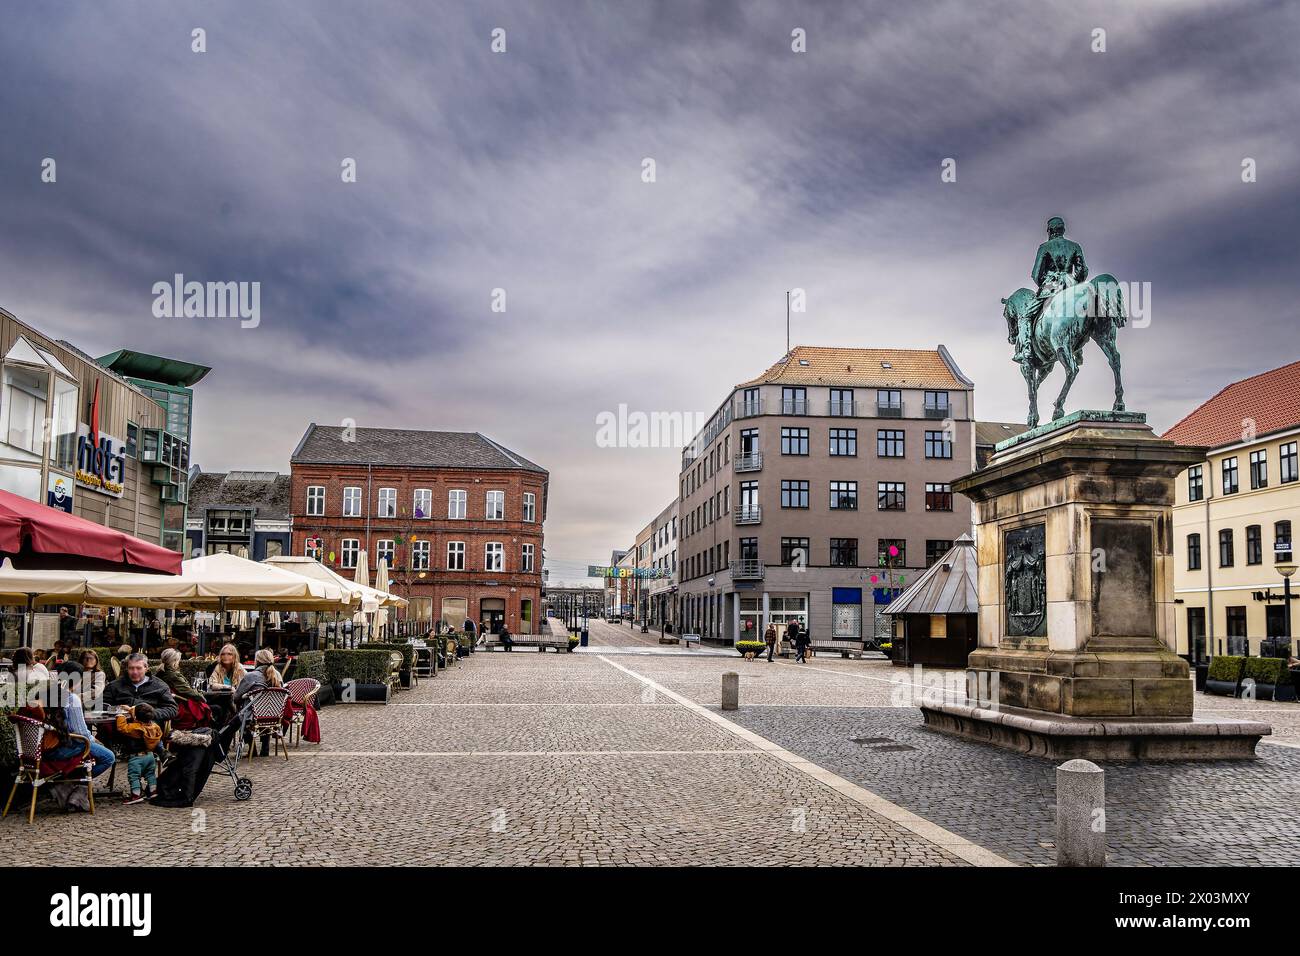 Main market square in Esbjerg, Denmark Stock Photo